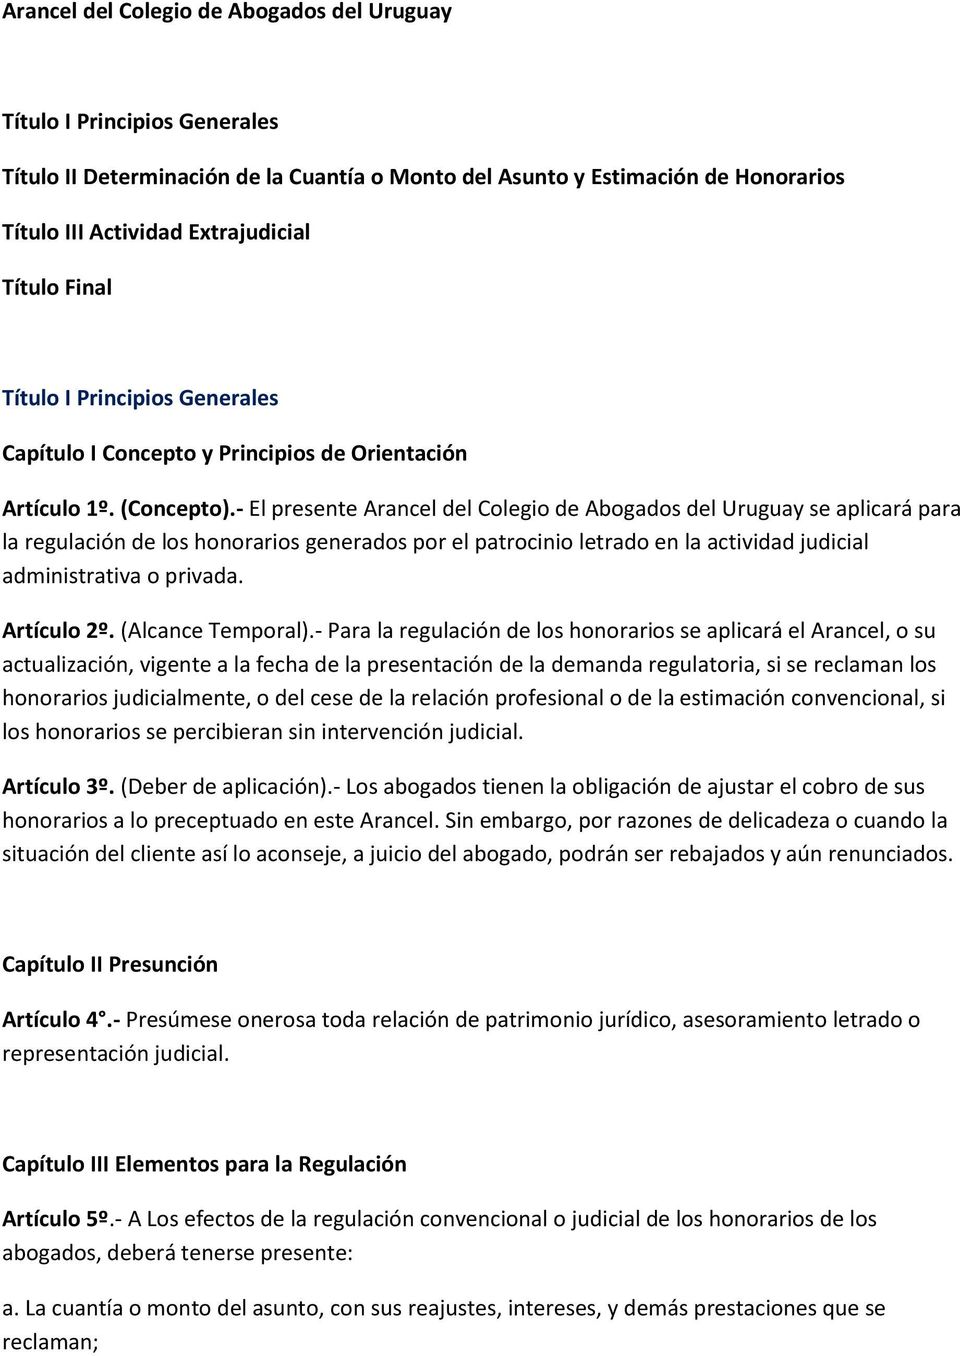 - El presente Arancel del Colegio de Abogados del Uruguay se aplicará para la regulación de los honorarios generados por el patrocinio letrado en la actividad judicial administrativa o privada.